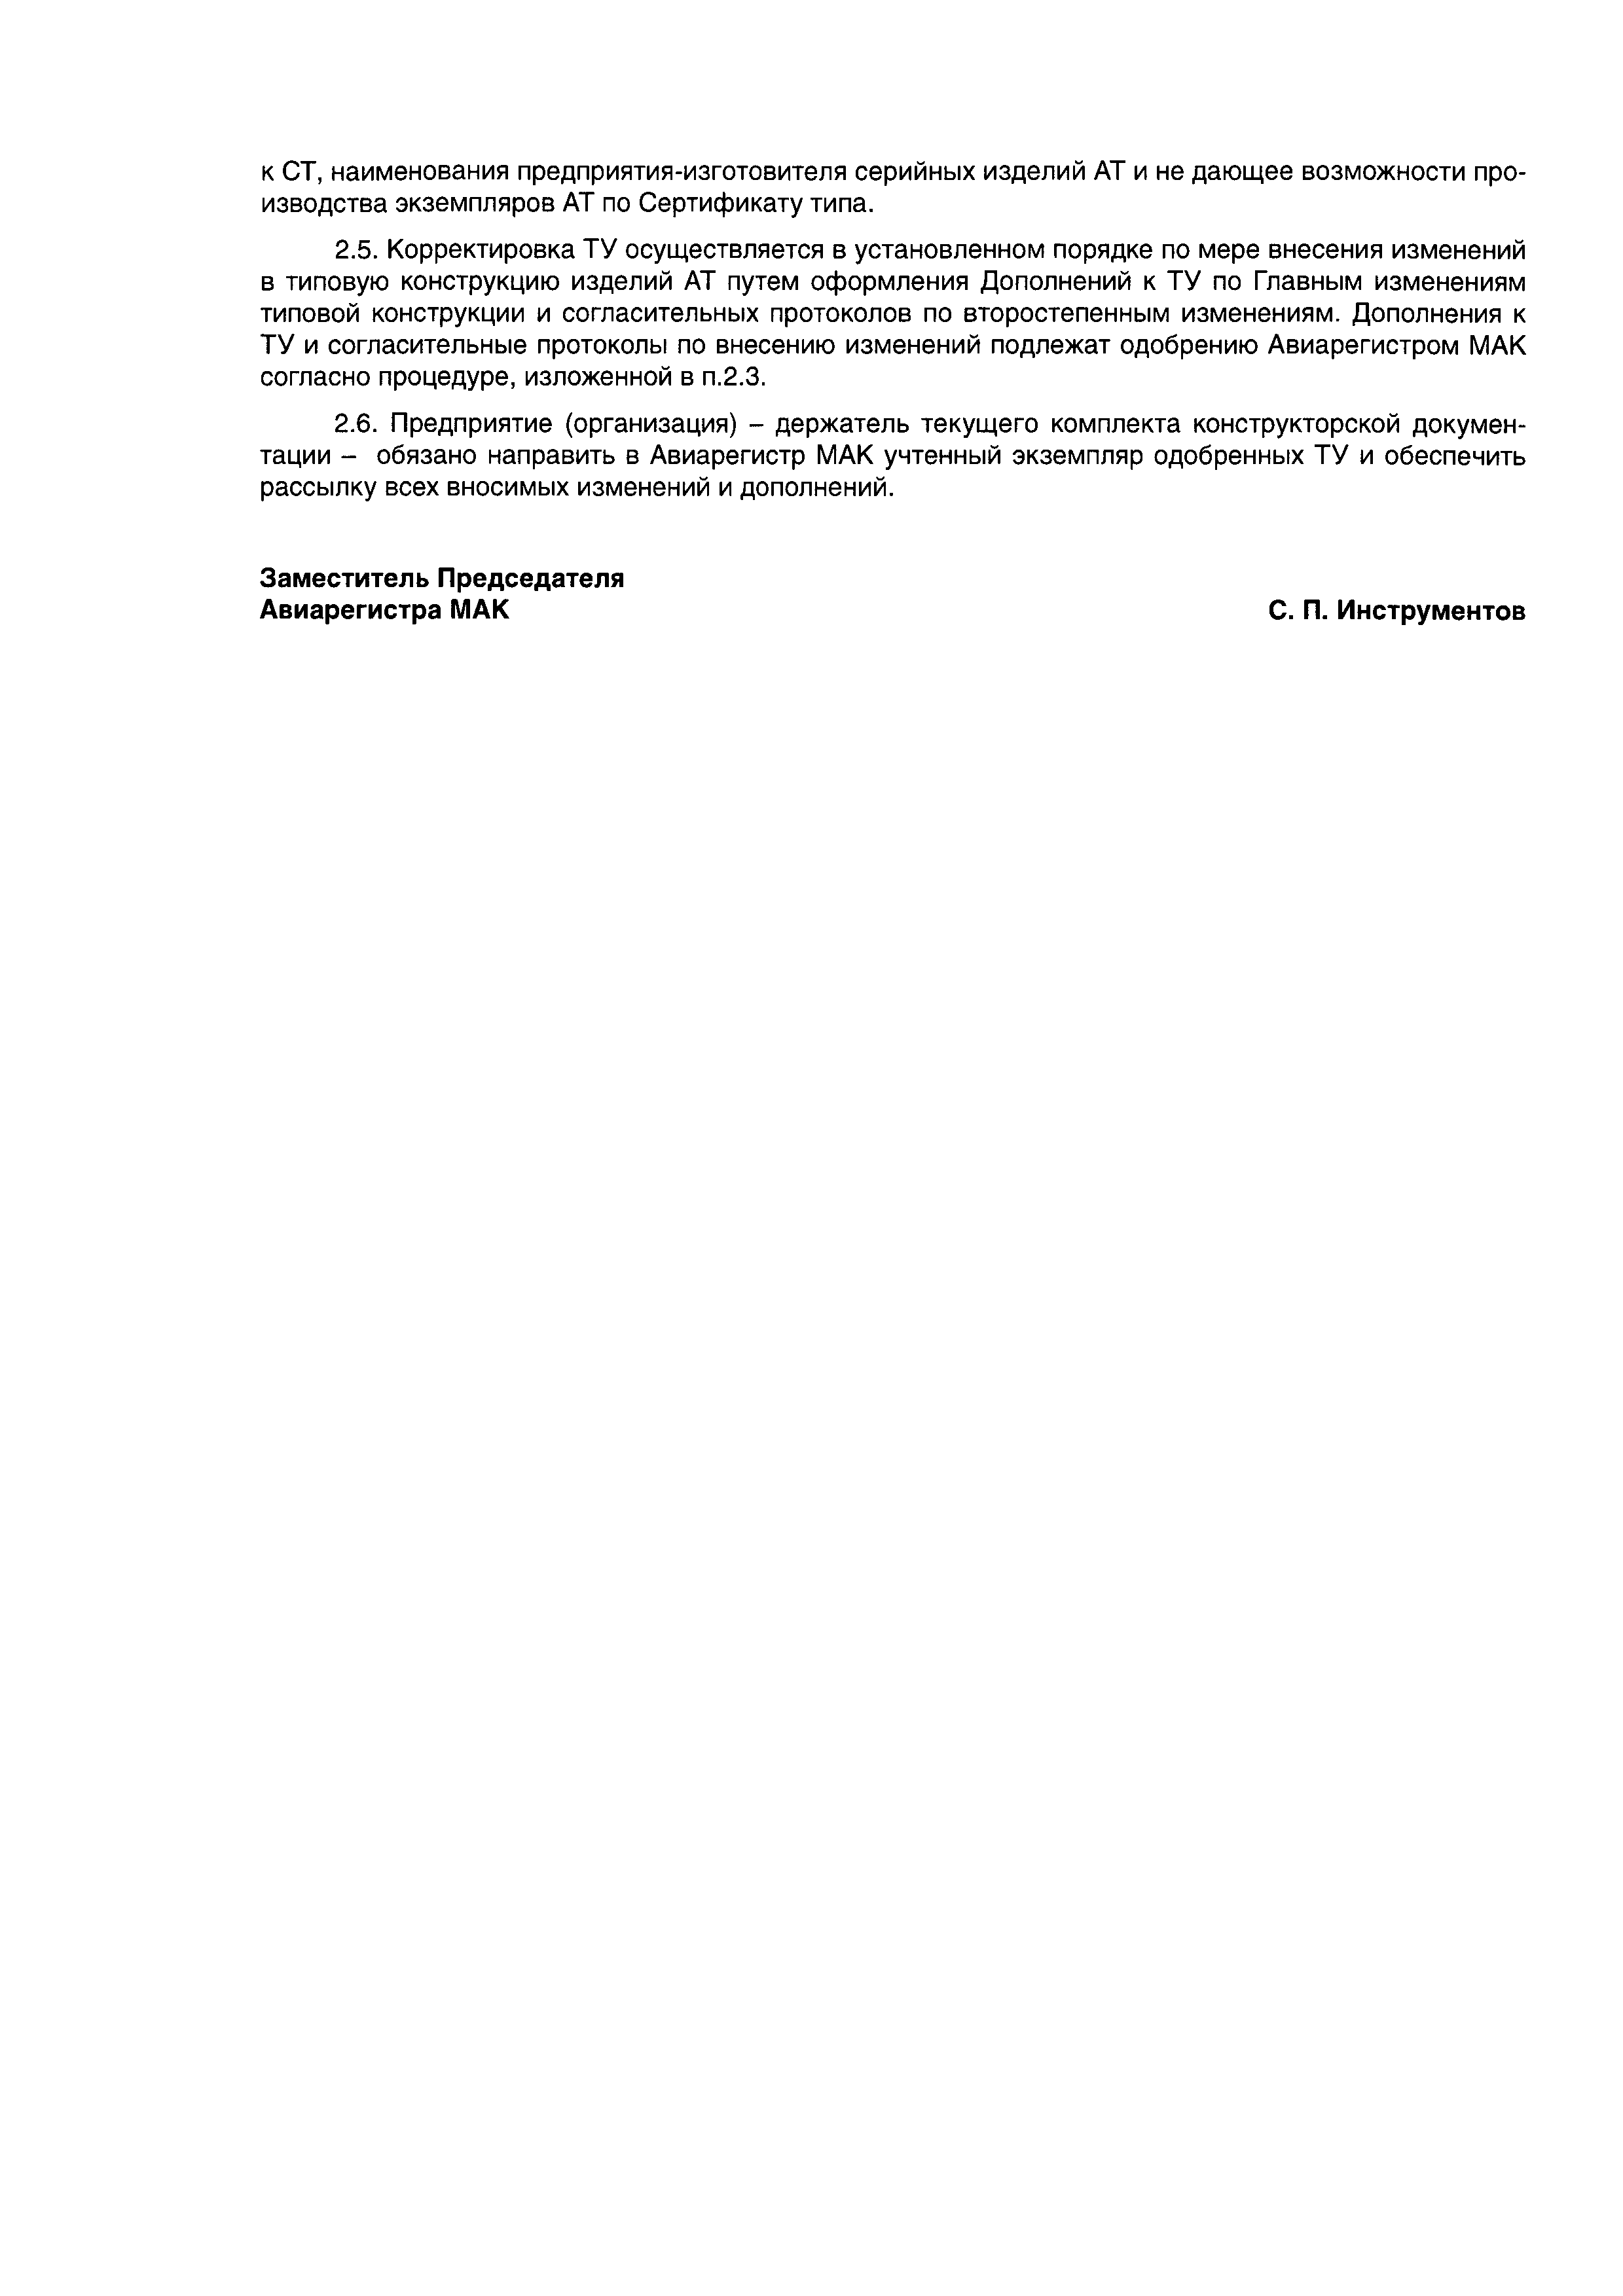 Директивное письмо 03-2003